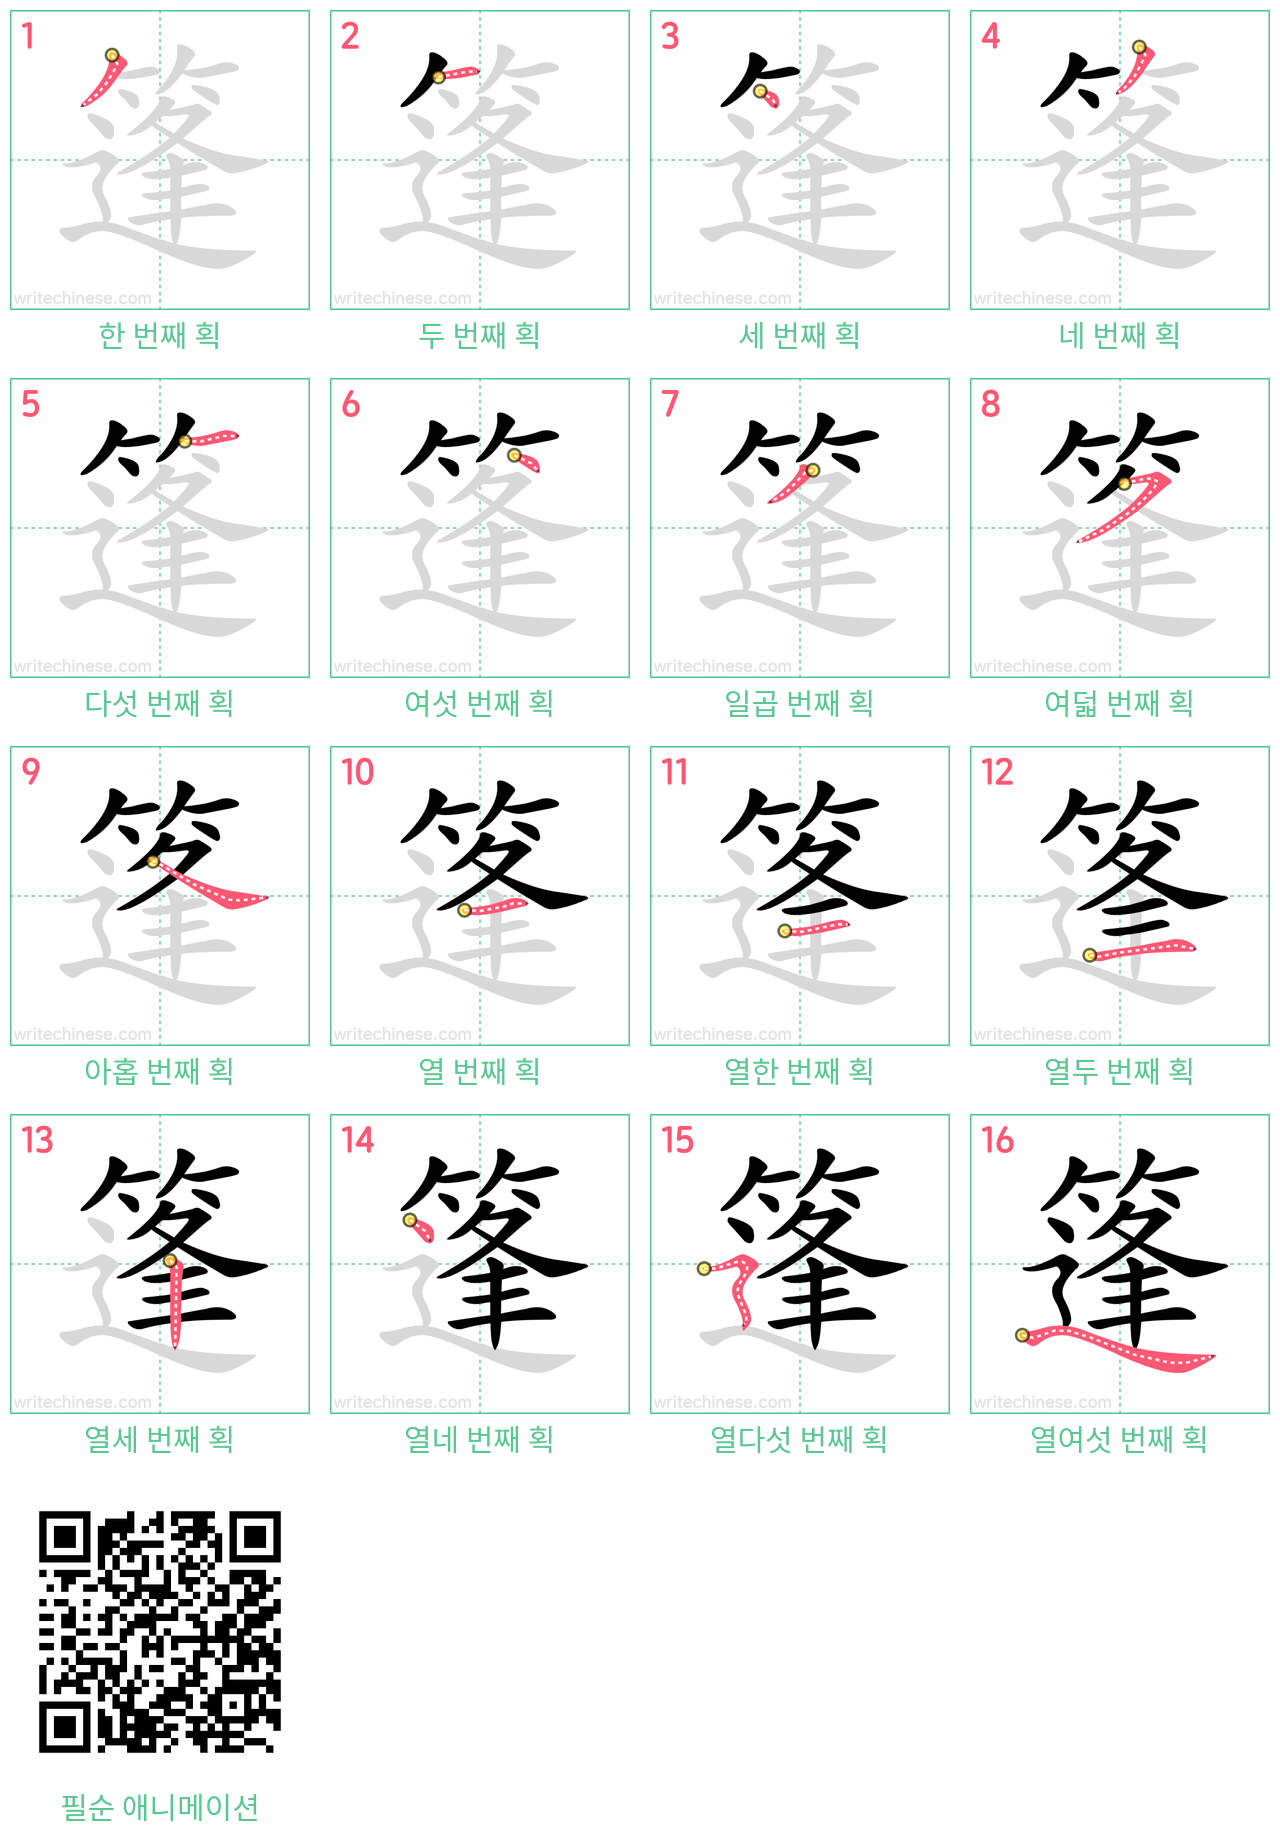 篷 step-by-step stroke order diagrams